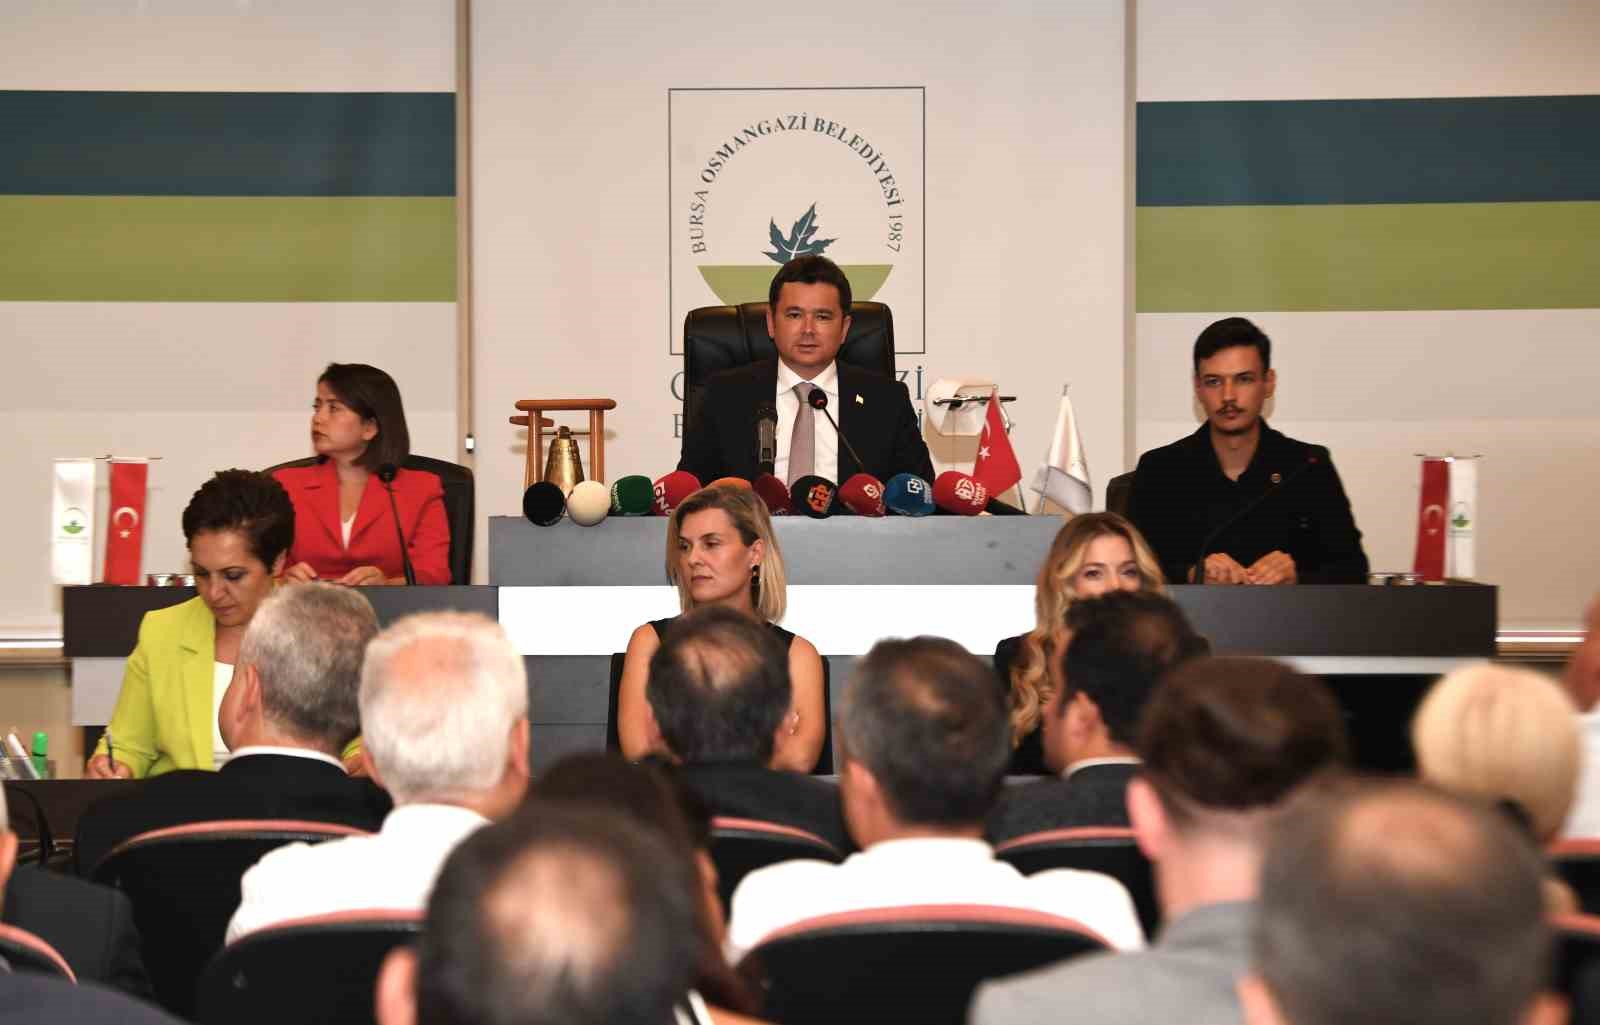 Başkan Aydın: "Ağaçlandırma çalışmalarına katkı vereceğiz"
